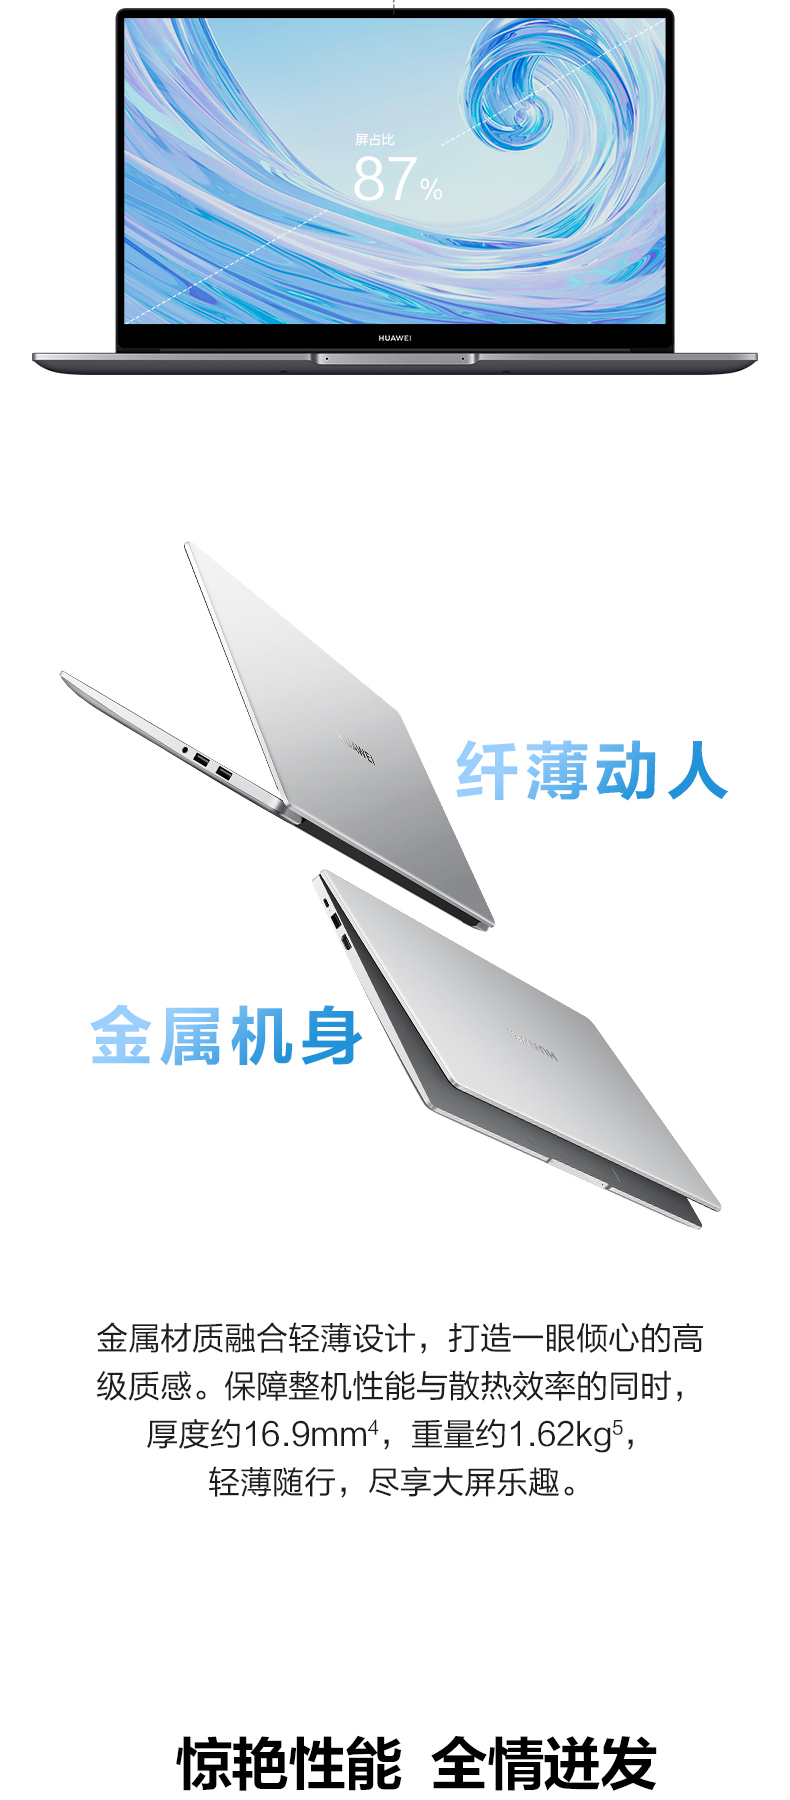 华为 HUAWEI 笔记本电脑 MateBook D 15.6英寸 (银色) AMD R5 3500U 16G+256G SSD+1T HDD